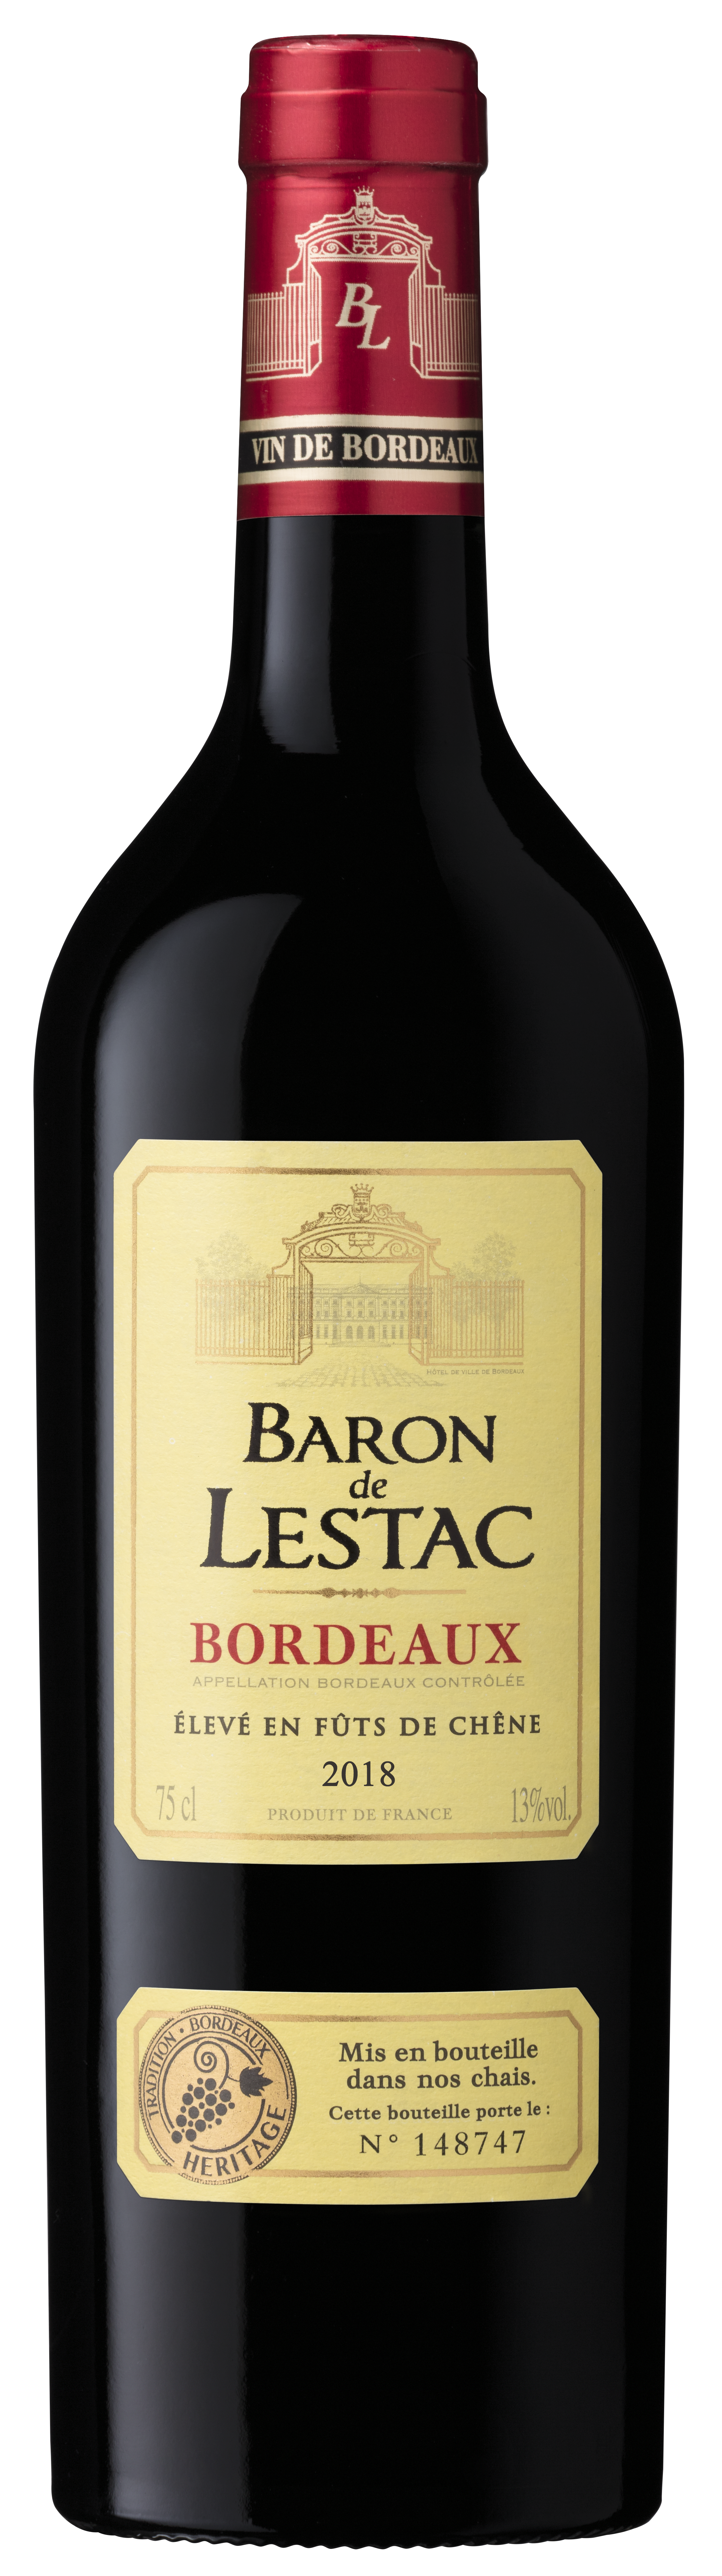 Baron de Lestac - Vin rouge Bordeaux (750 ml)